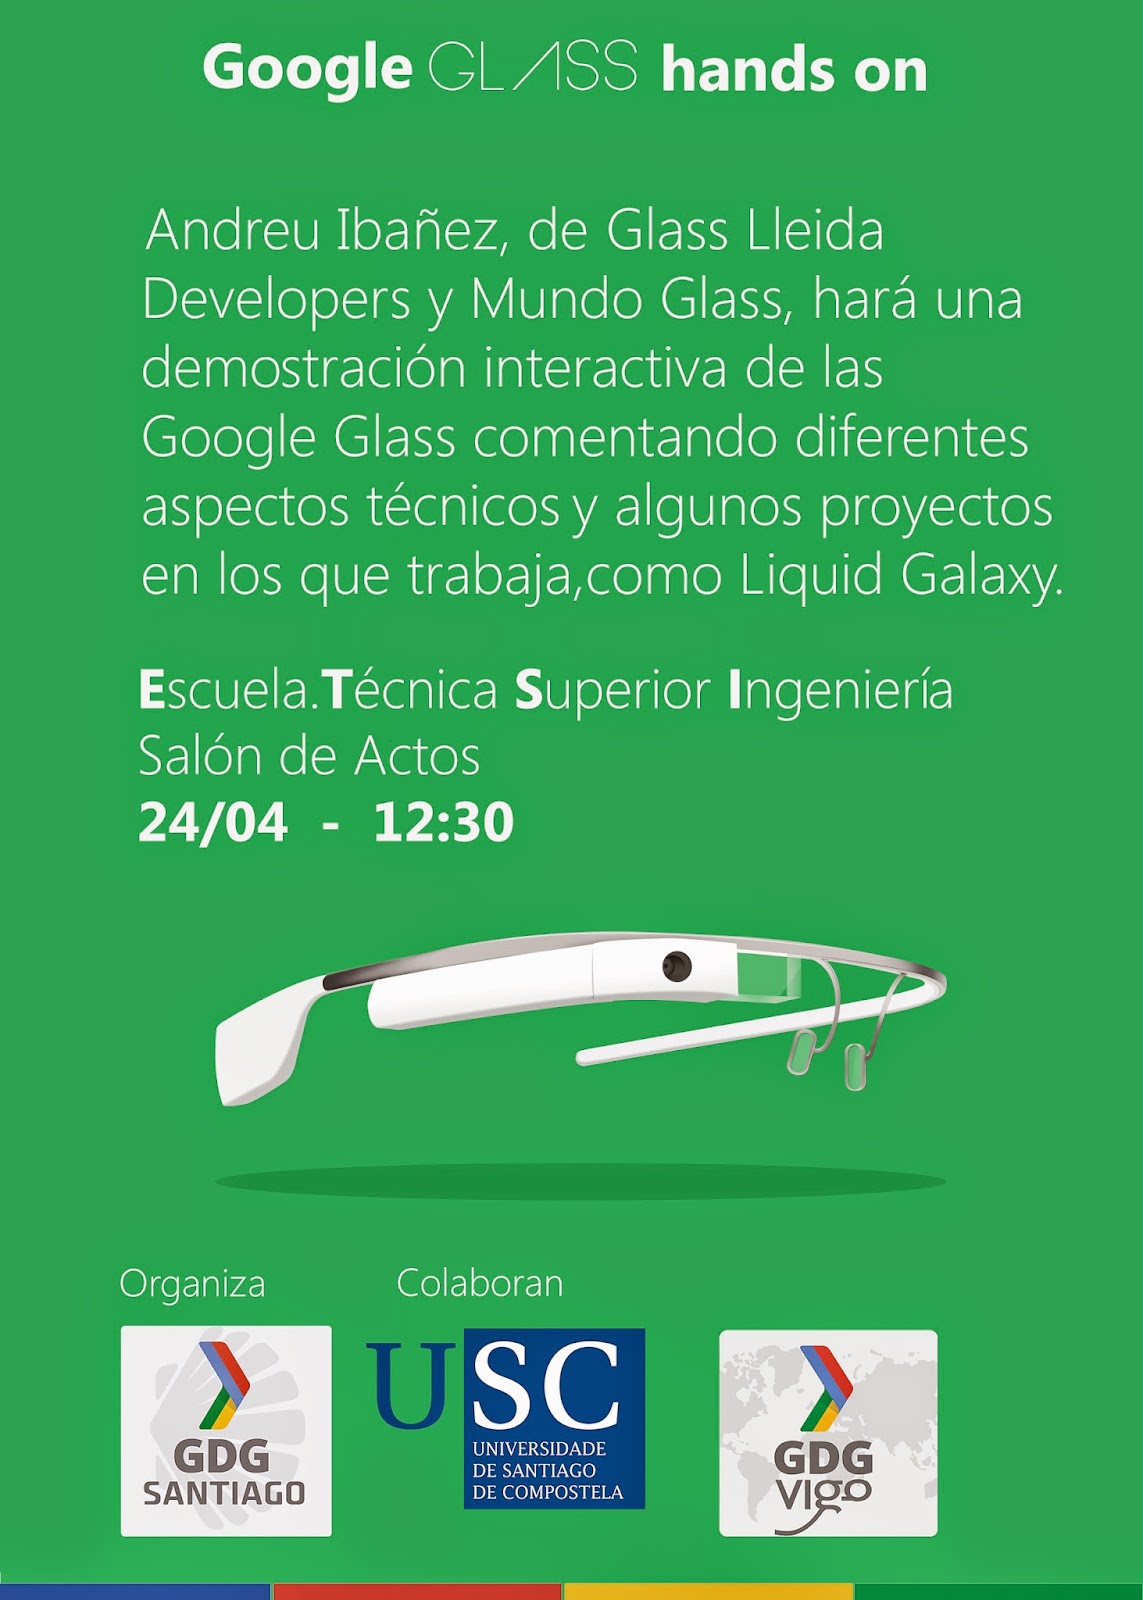 Y como el GDG Santiago no podía ser menos, cartel charla de #GoogleGlass que daré en Club Financiero de Vigo, gracias al @GDGSantiago y @MundoGlass_es